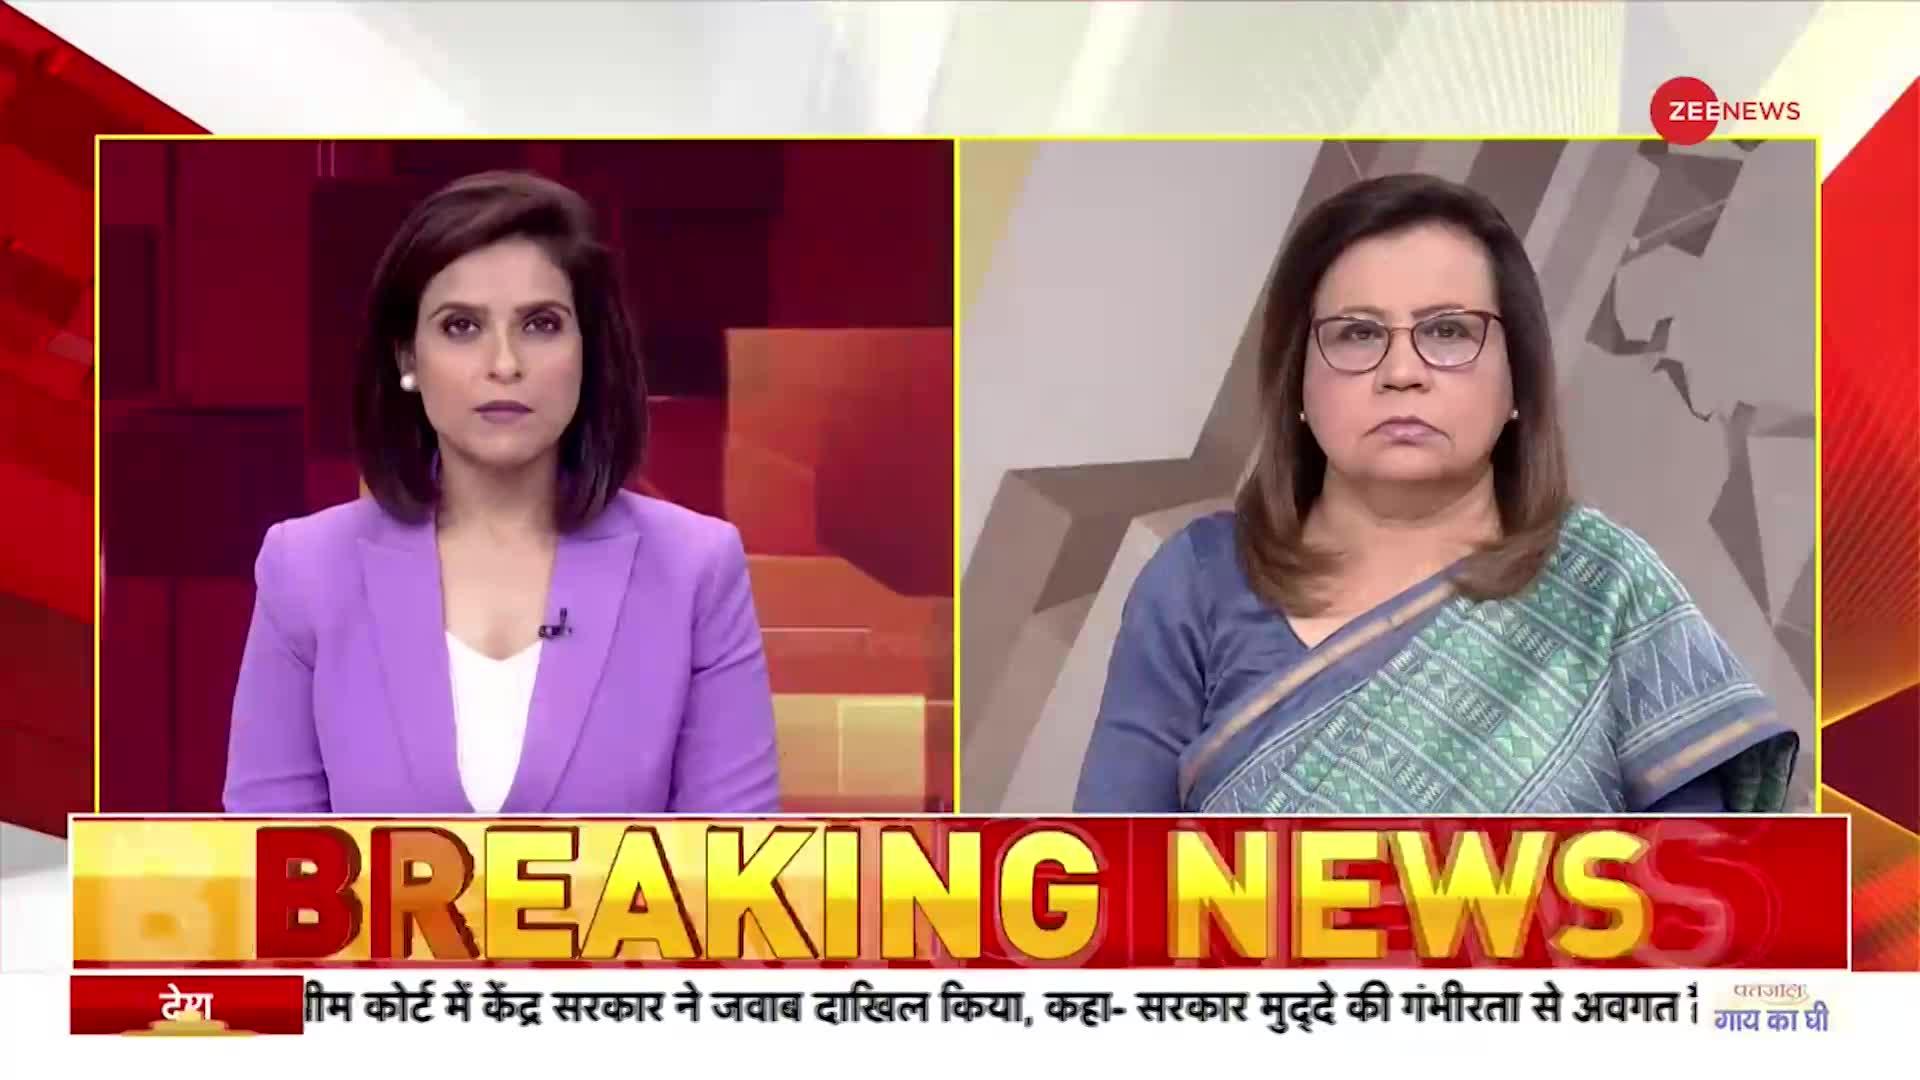 Badhir News : दिल्ली पांडव नगर हत्याकांड में बड़ा खुलासा